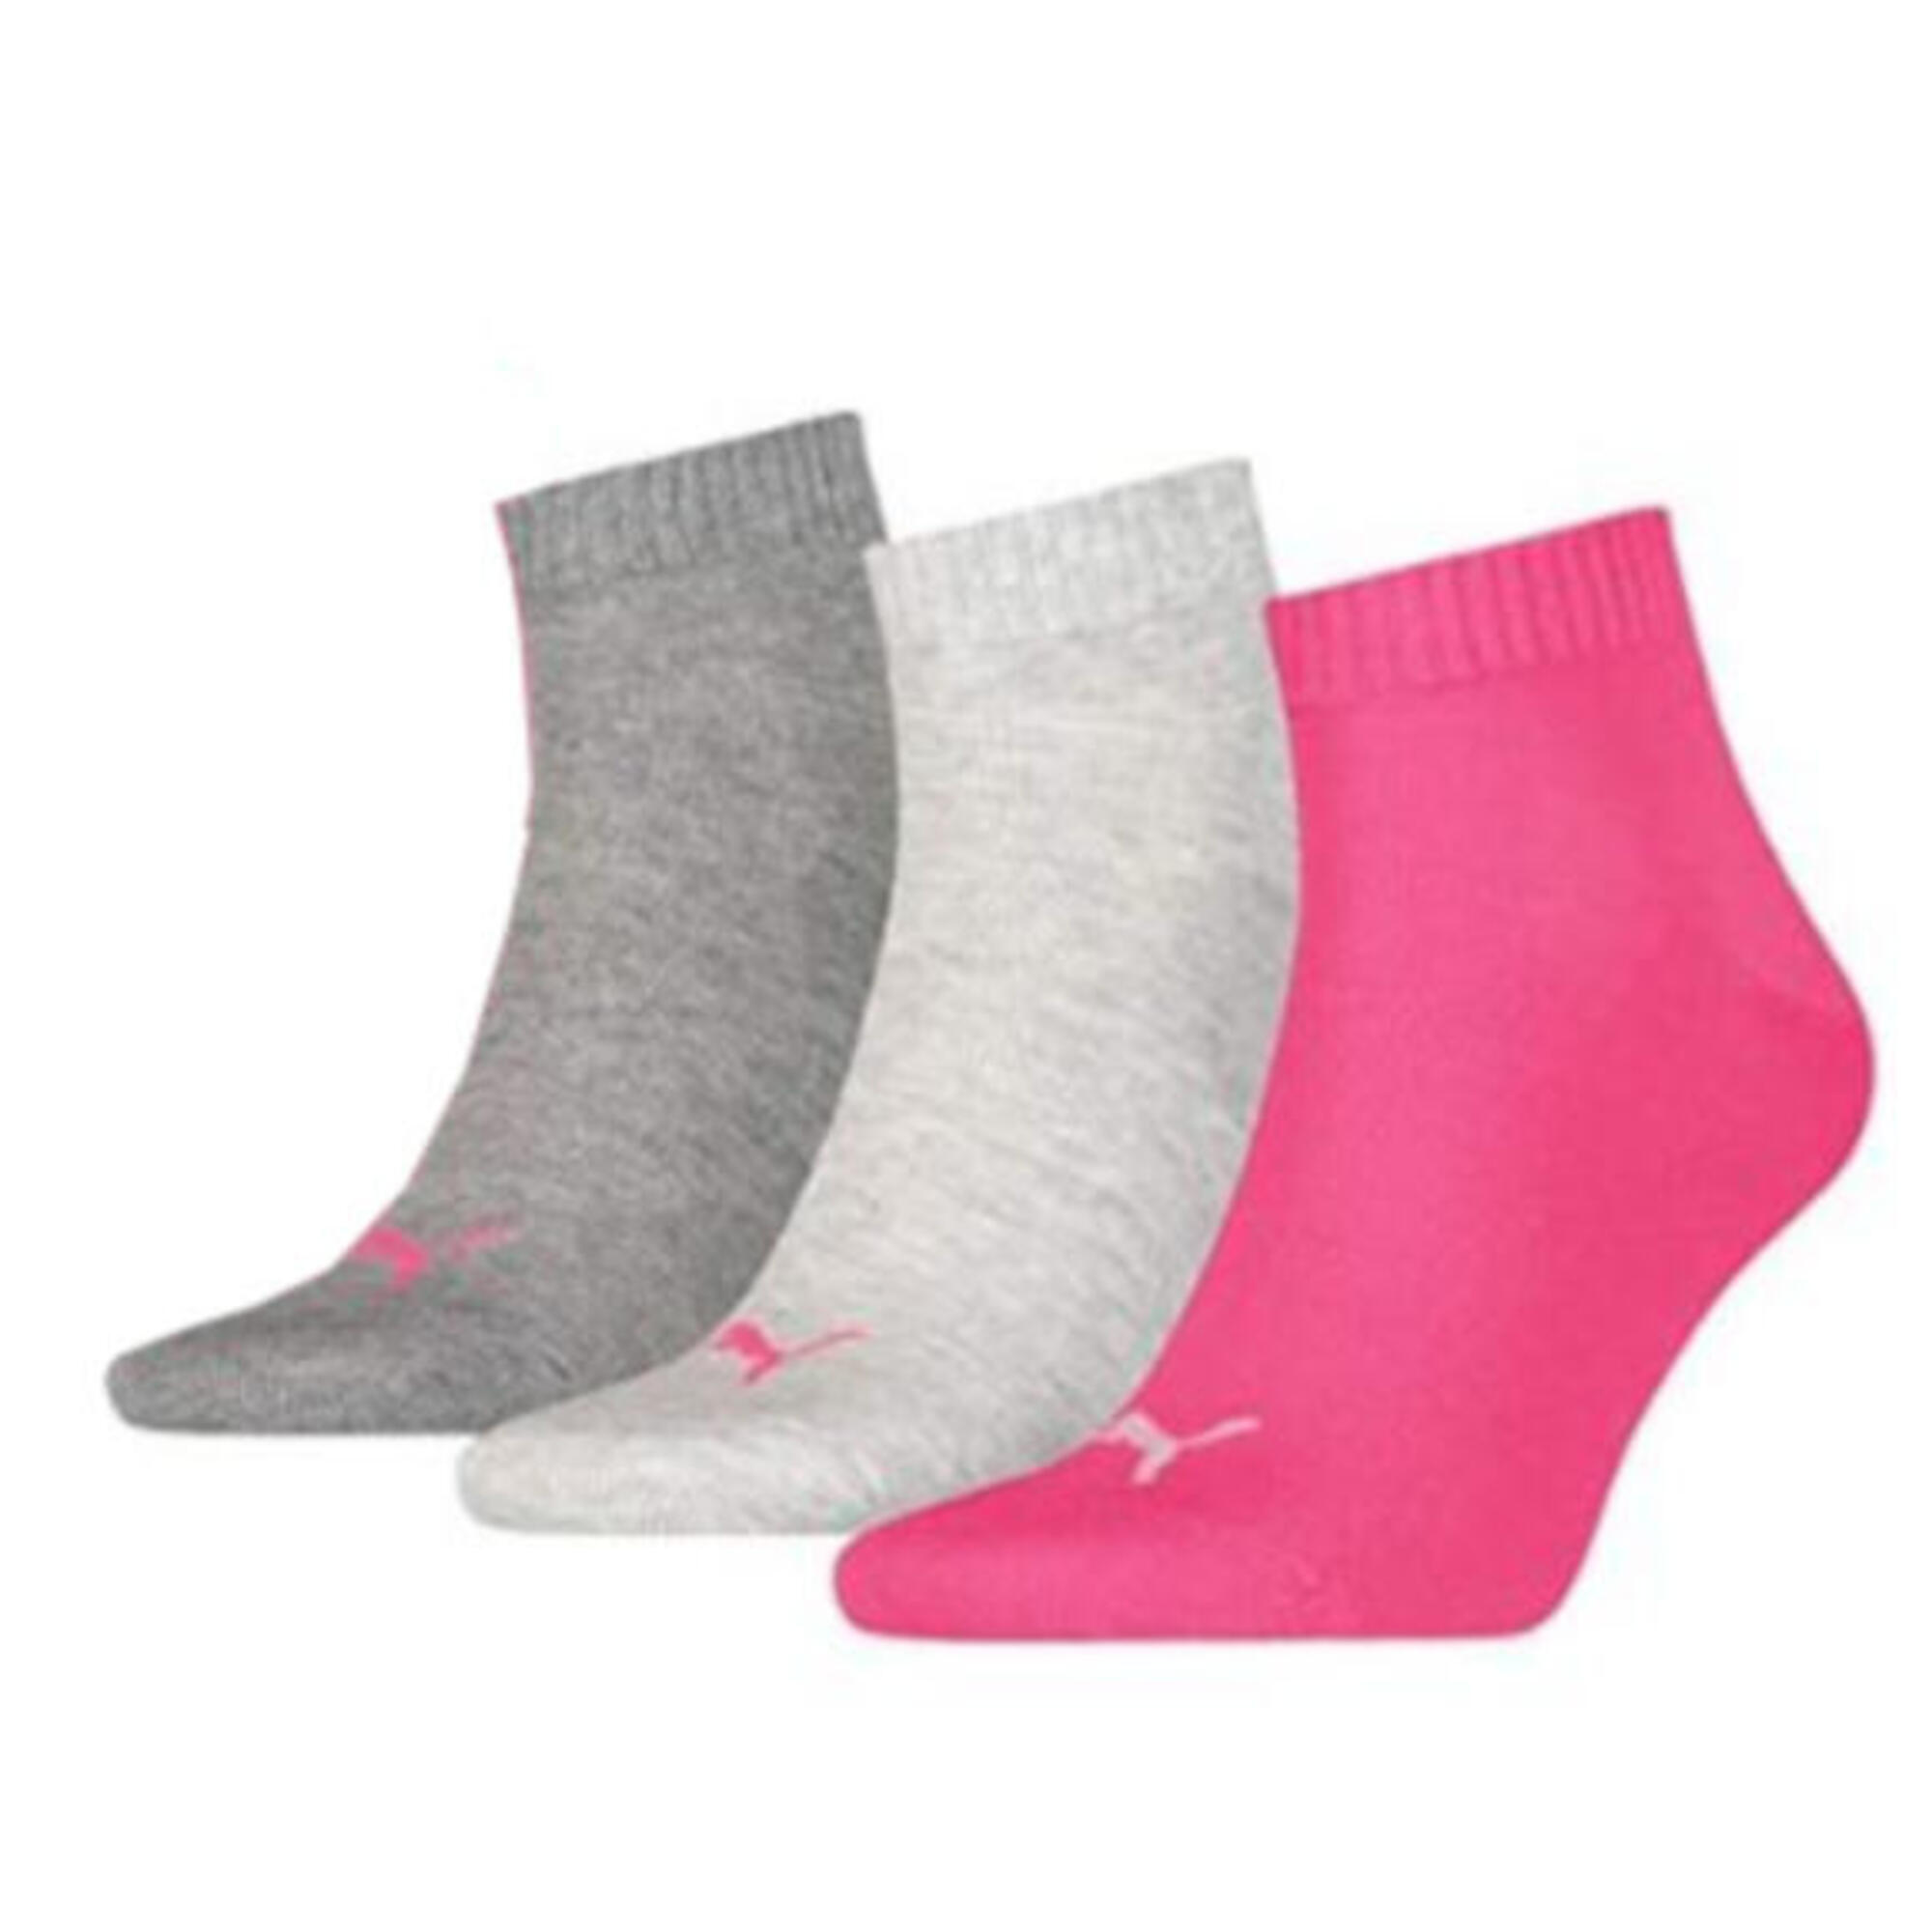 Puma chaussettes de sport coton rose/gris/gris clair 3 paires